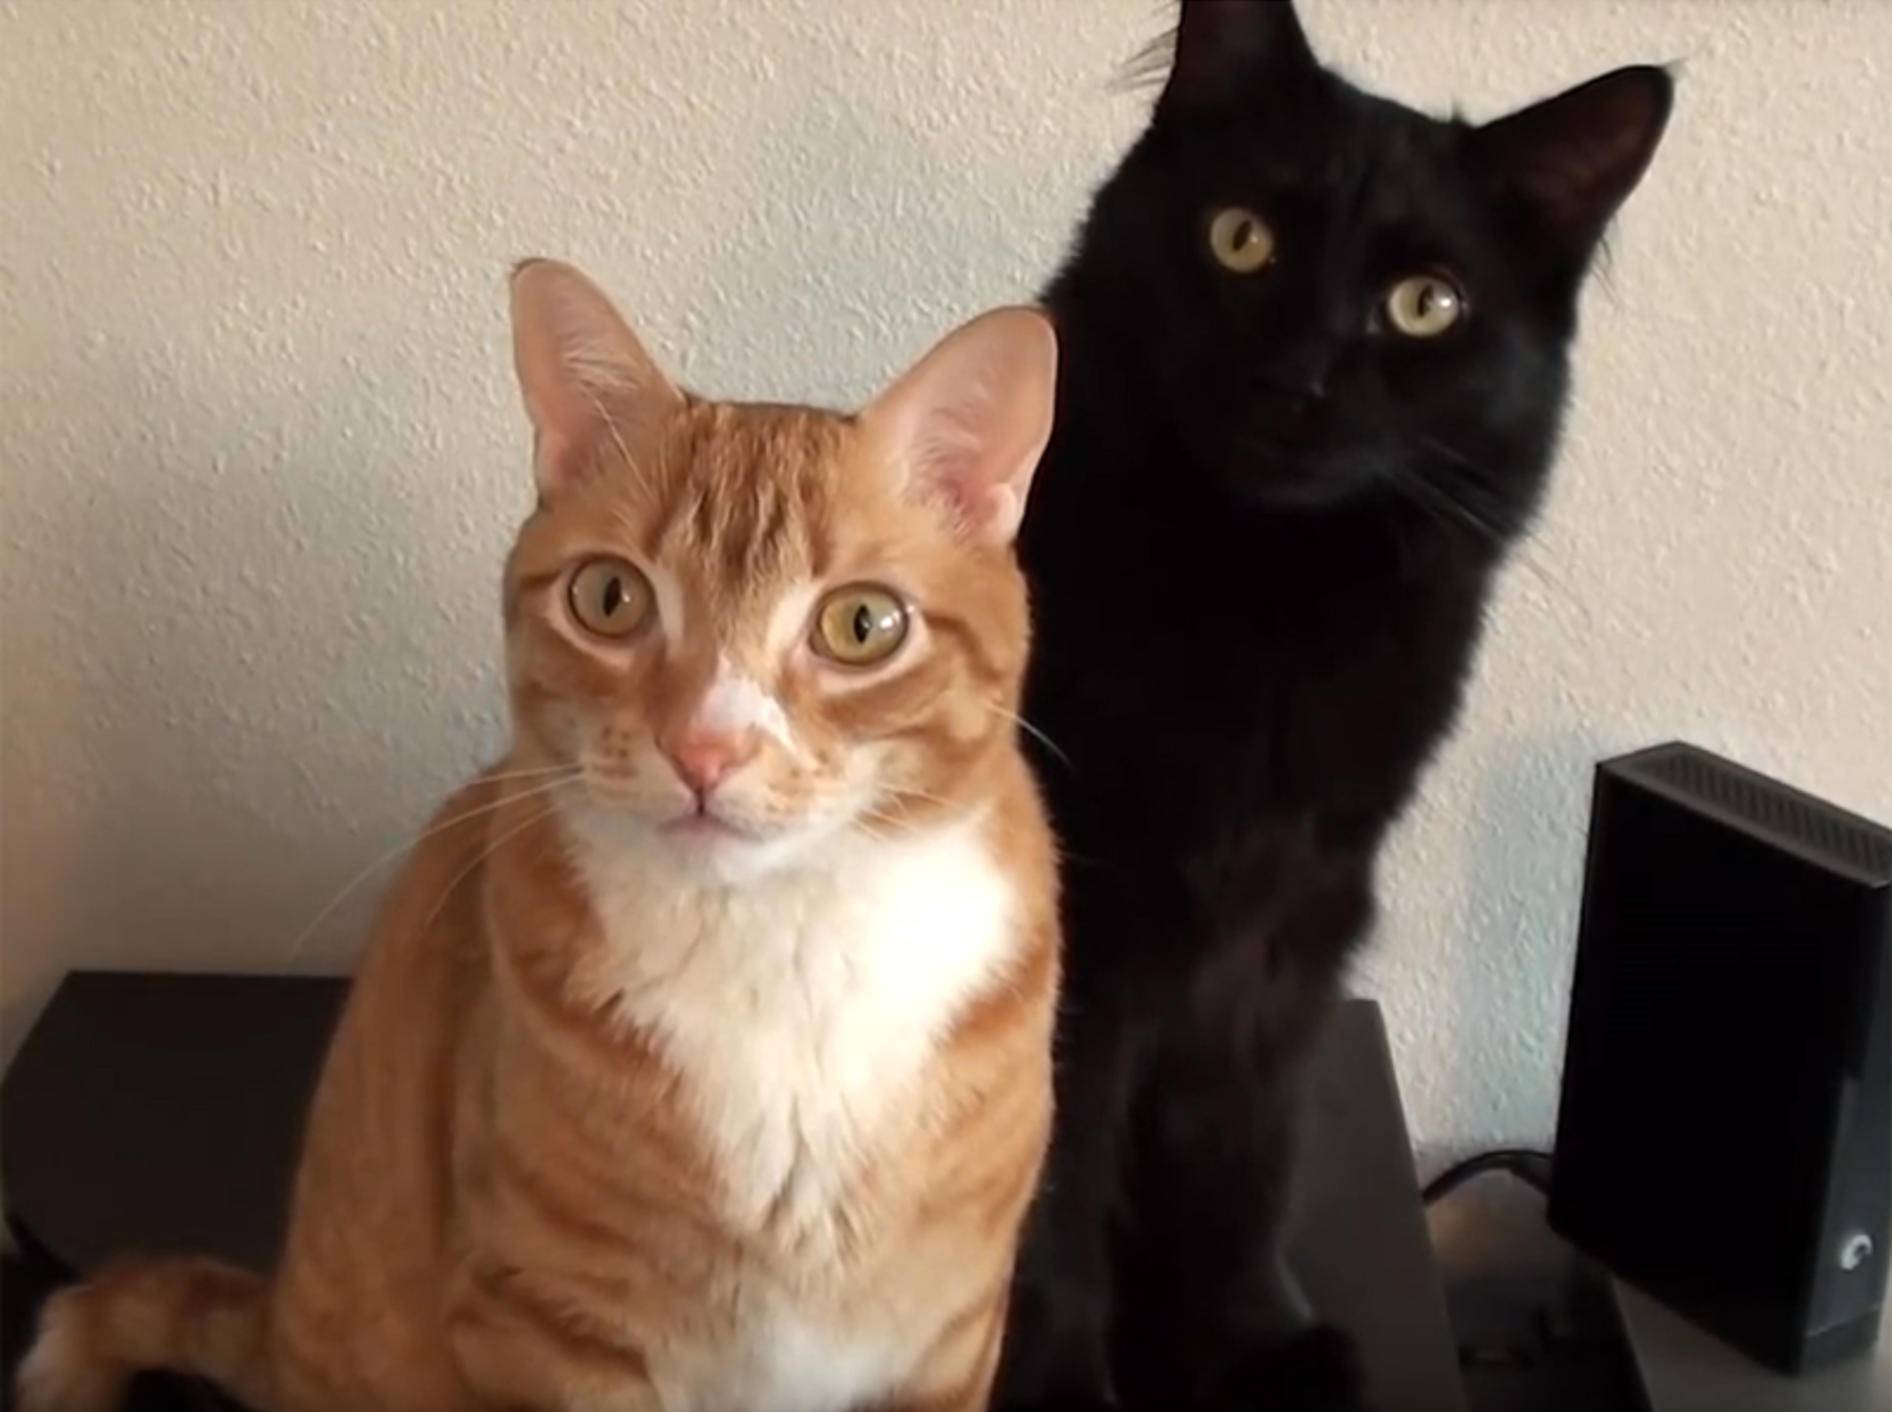 Cole und Marmalade lauschen andächtig der Katzenmusik aus dem Lautsprecher – YouTube / Cole and Marmalade